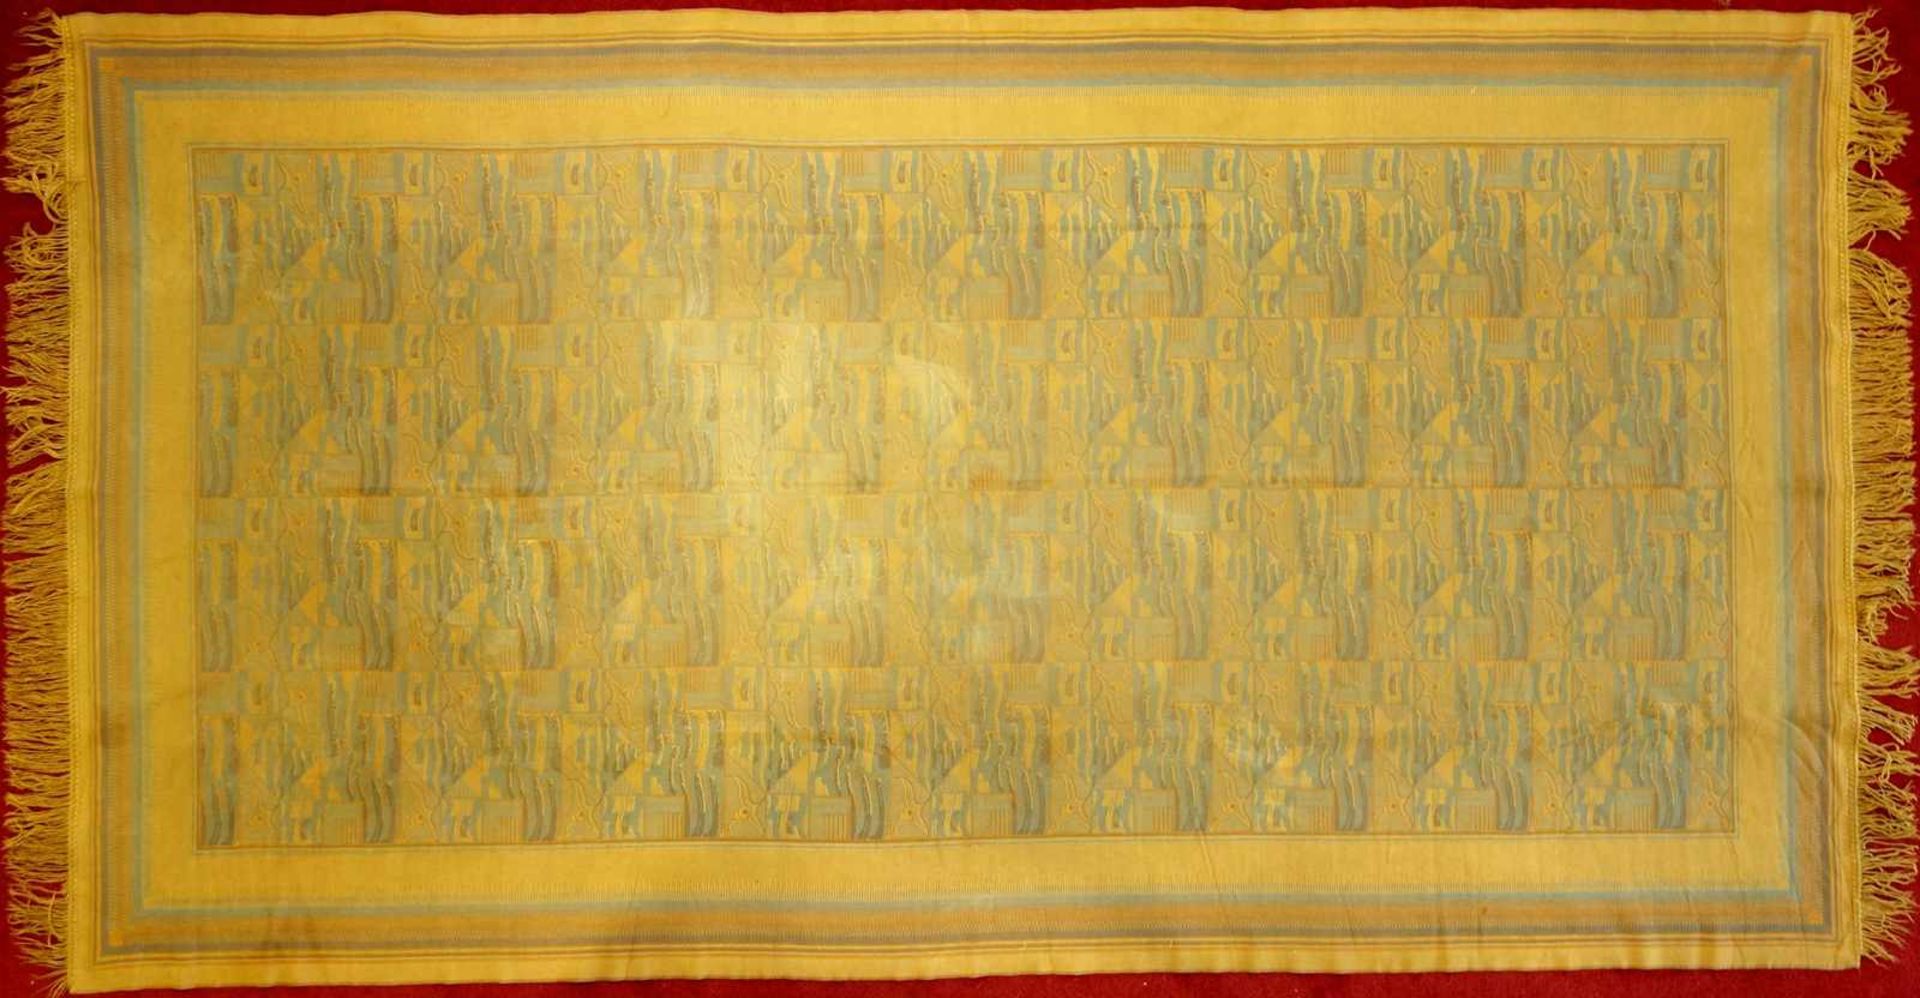 Tischdecke, Art deco, 1920/30er Jahre, eingewebtes orange-blaues, geometrisches Muster, zweiseitig